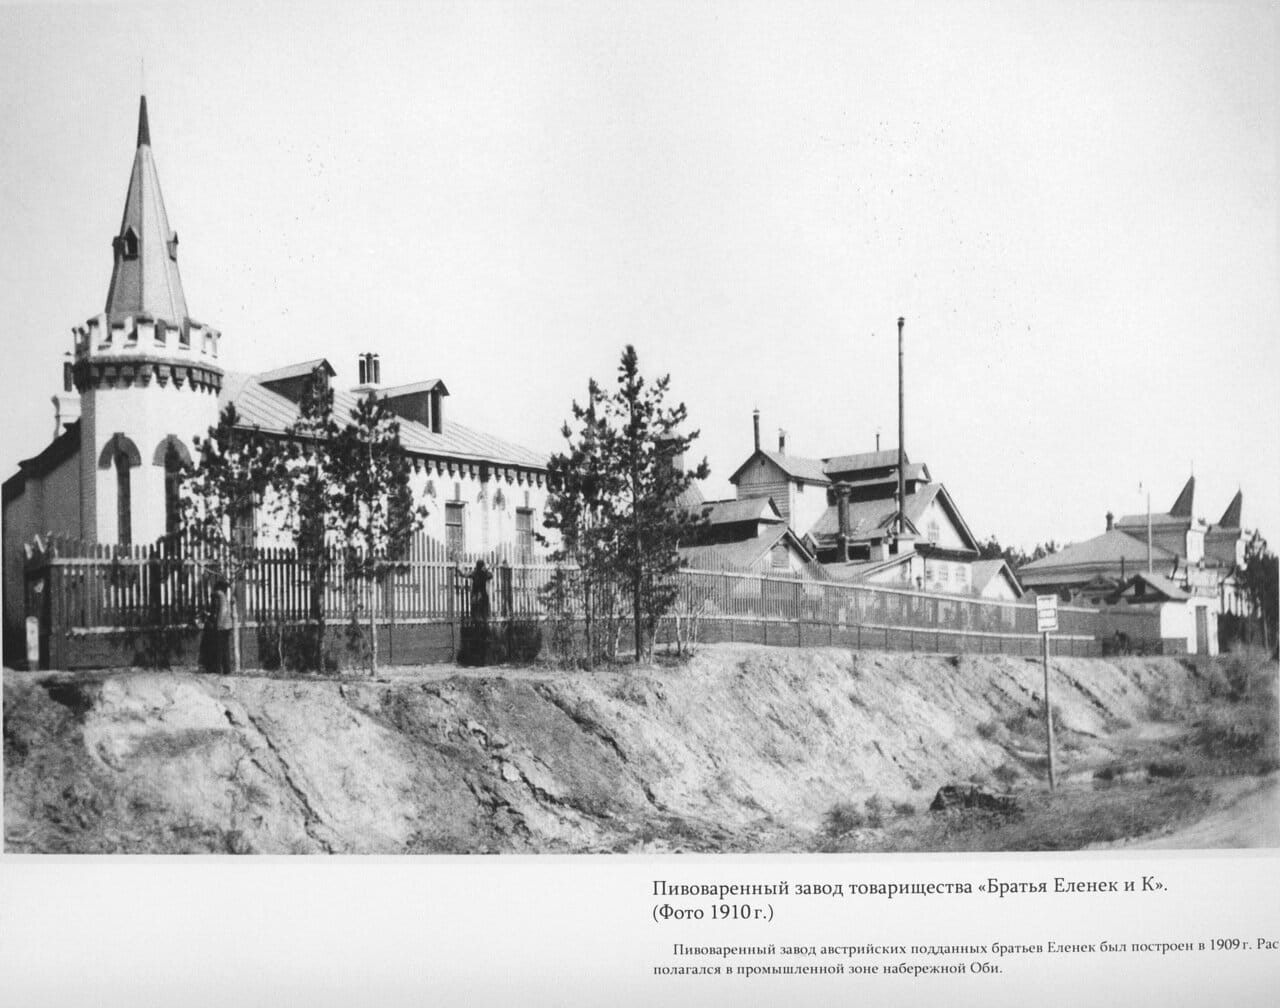 Пивзавод товарищества братьев Еленек и компания, 1910-е годы